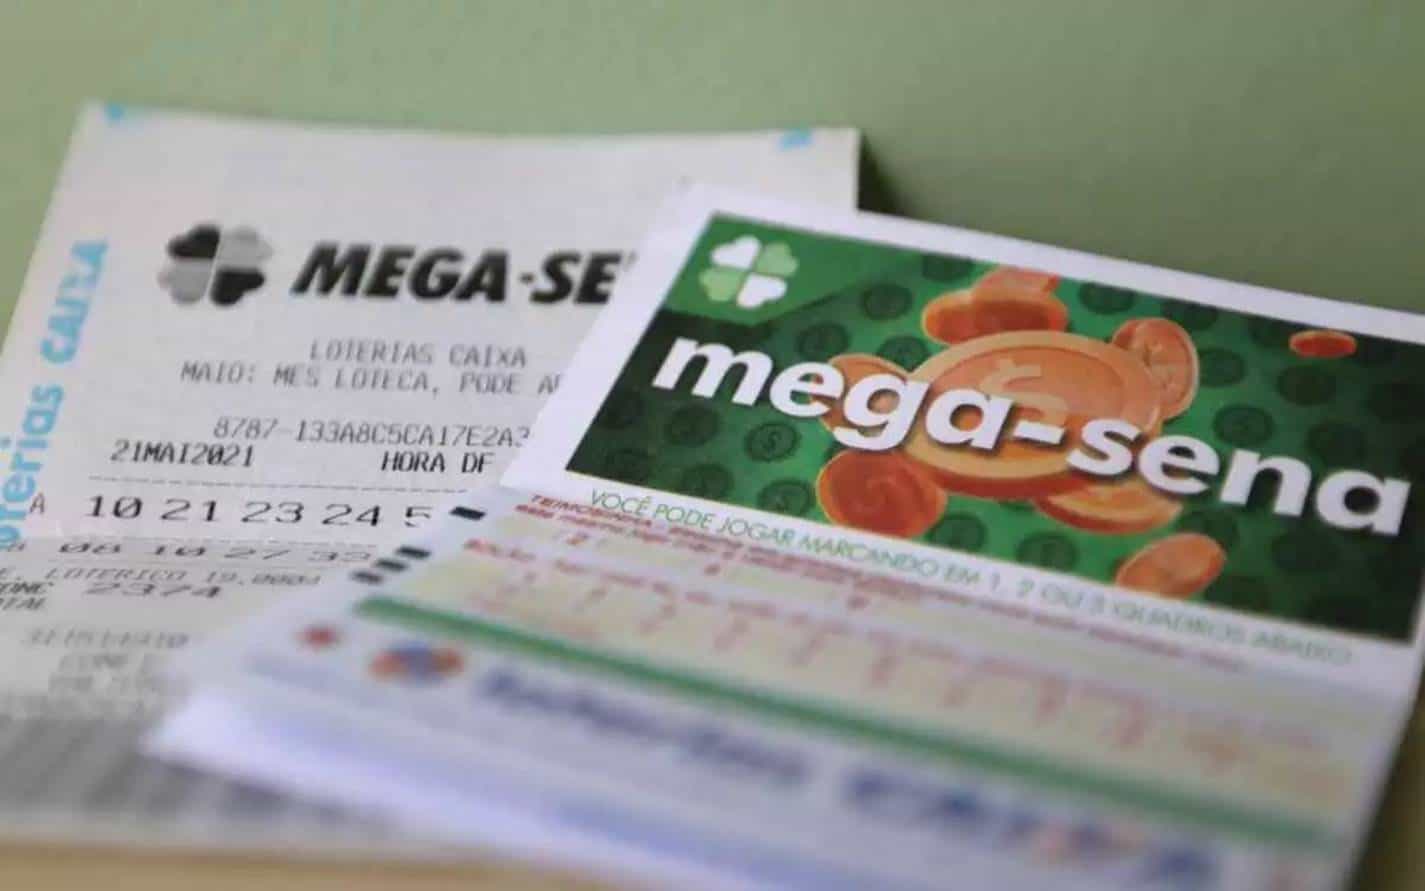 Mega-Sena 2482: confira o resultado do sorteio desta quarta-feira (18)